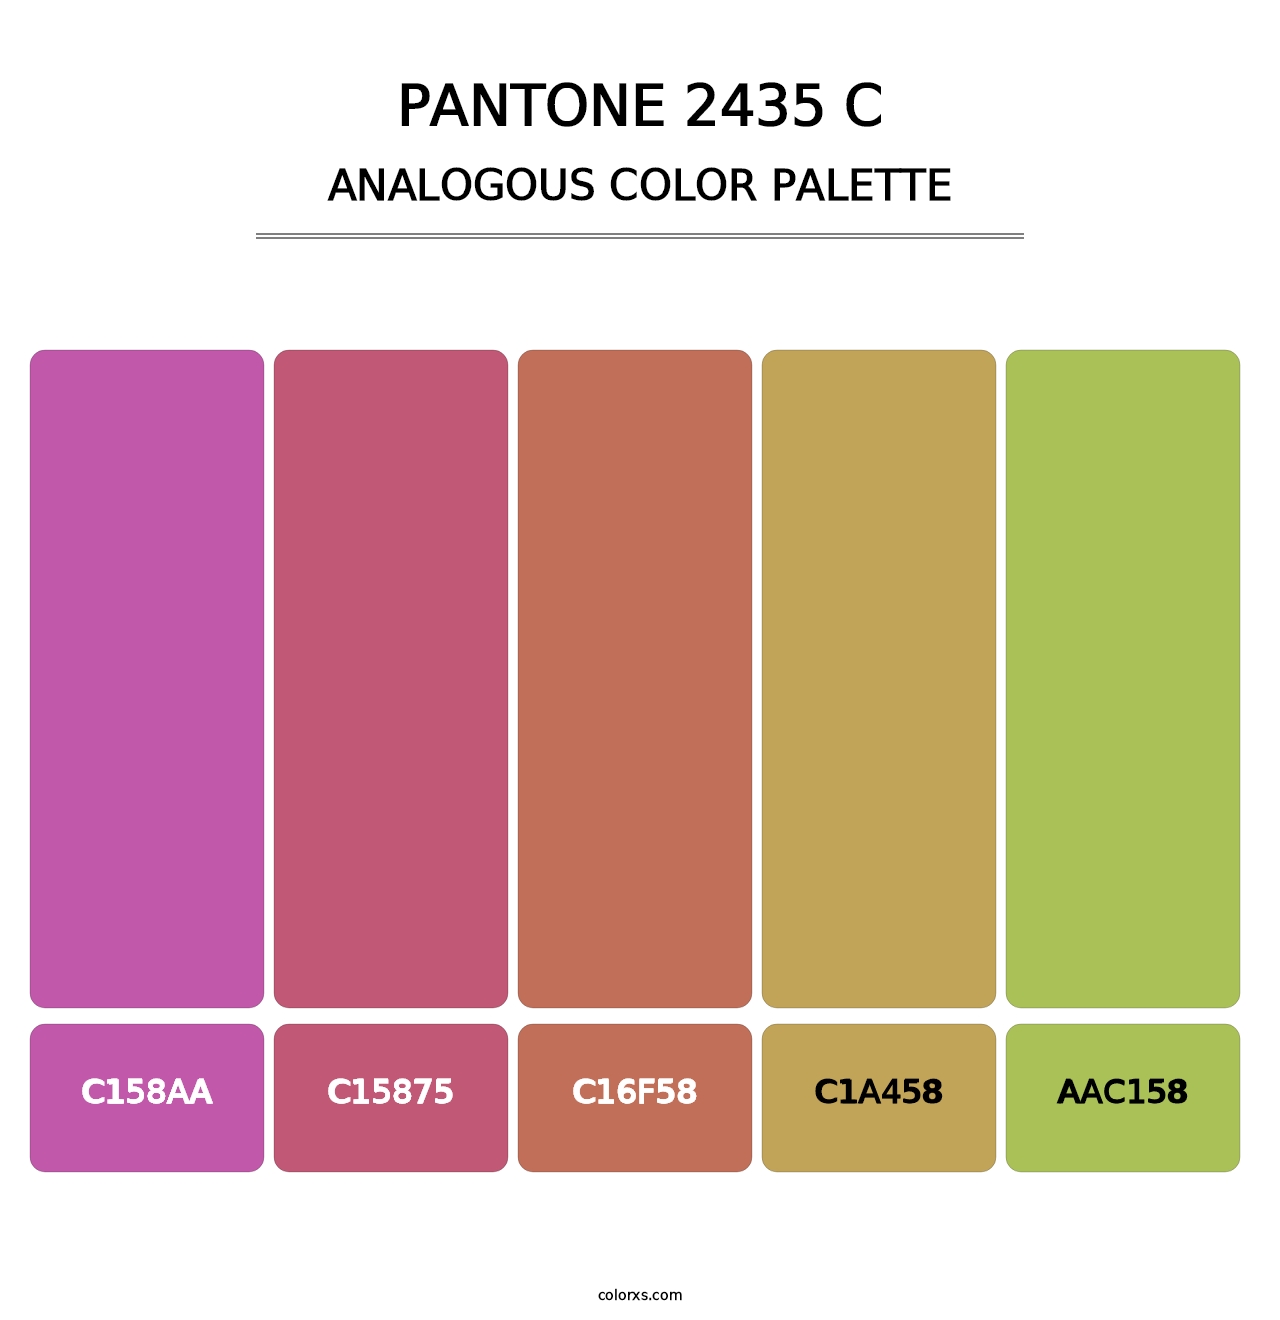 PANTONE 2435 C - Analogous Color Palette